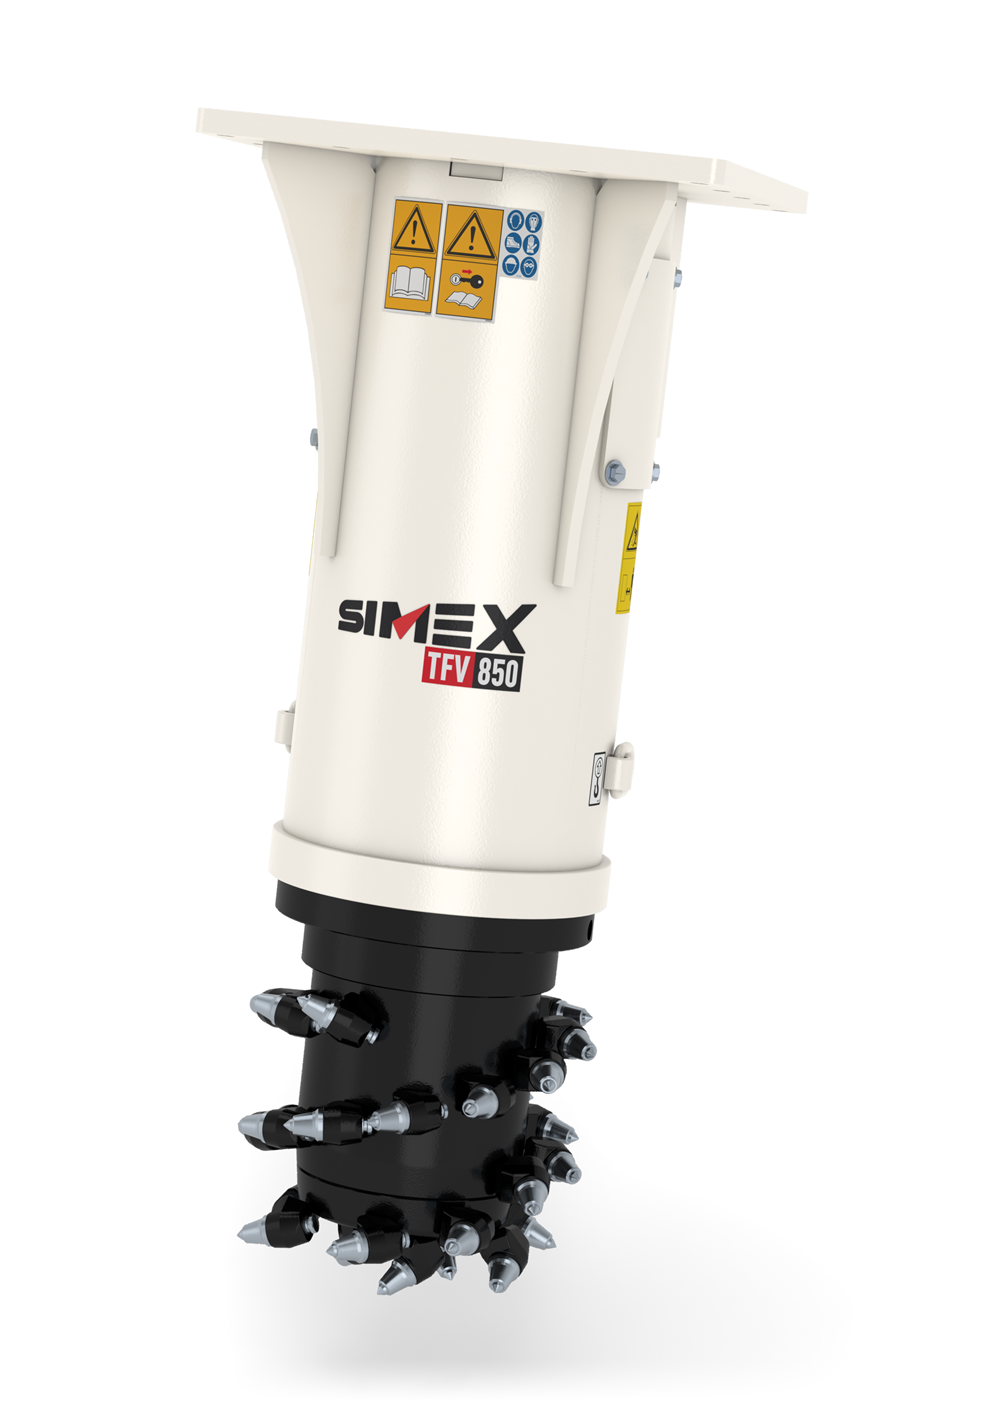 Simex è un costruttore specialista nelle frese di vario tipo